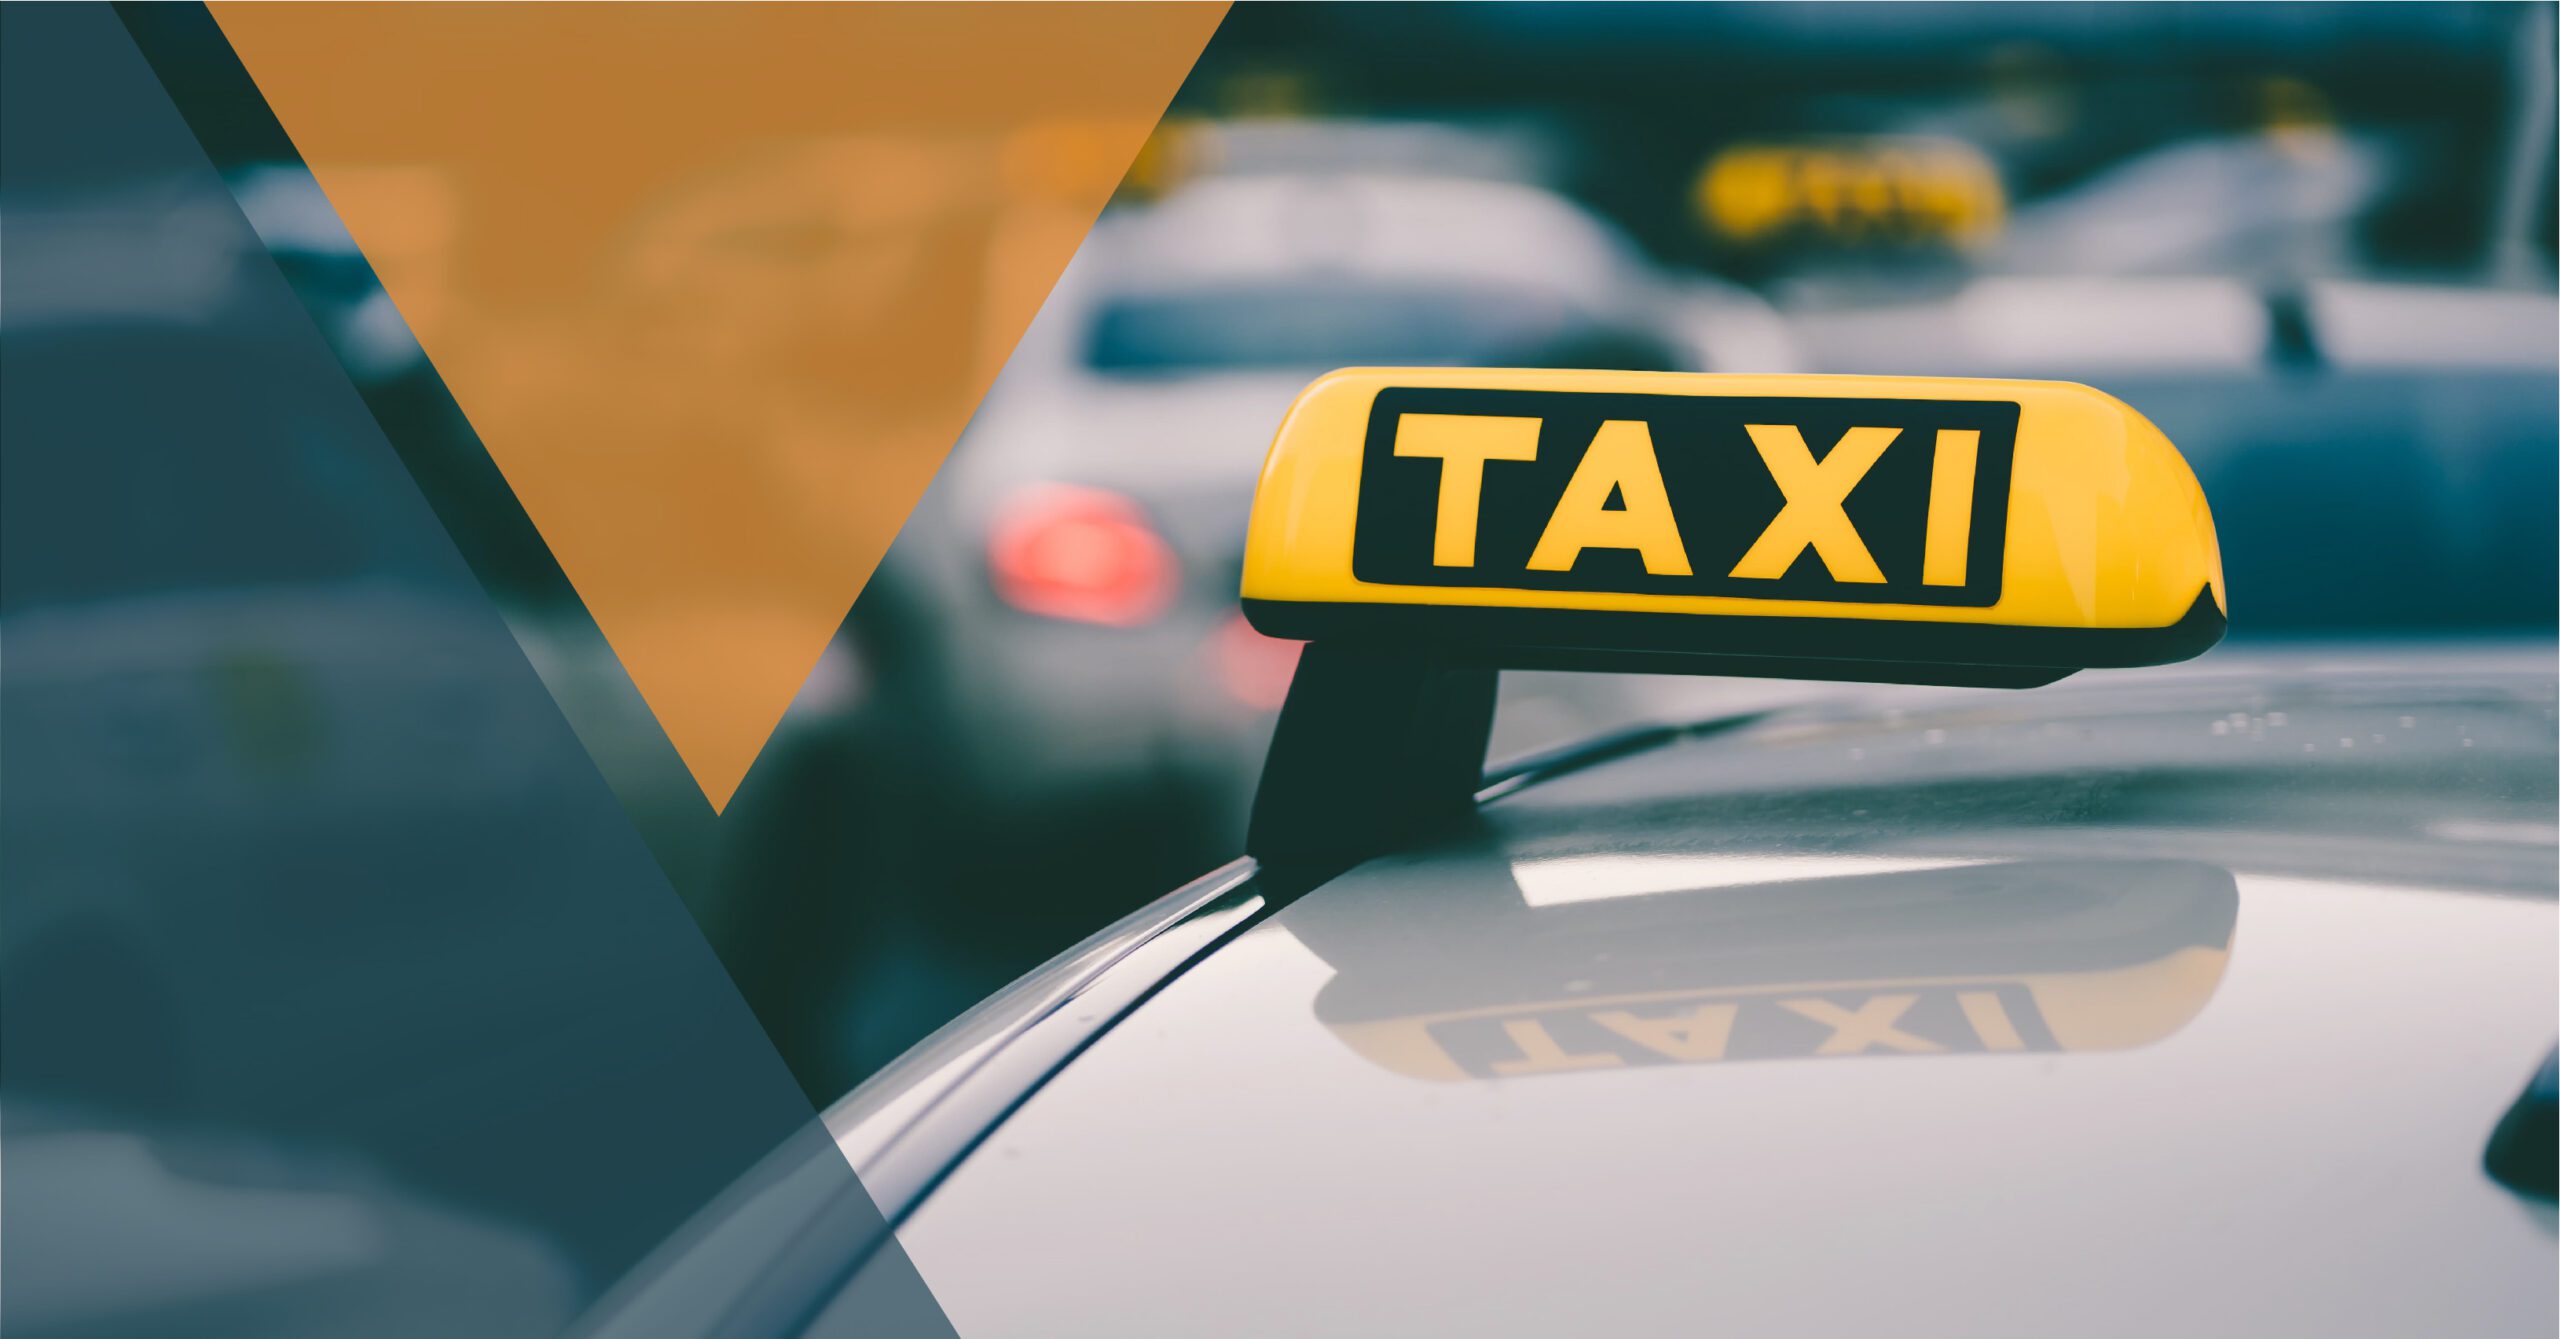 A importância da escolha de um táxi confiável e seguro